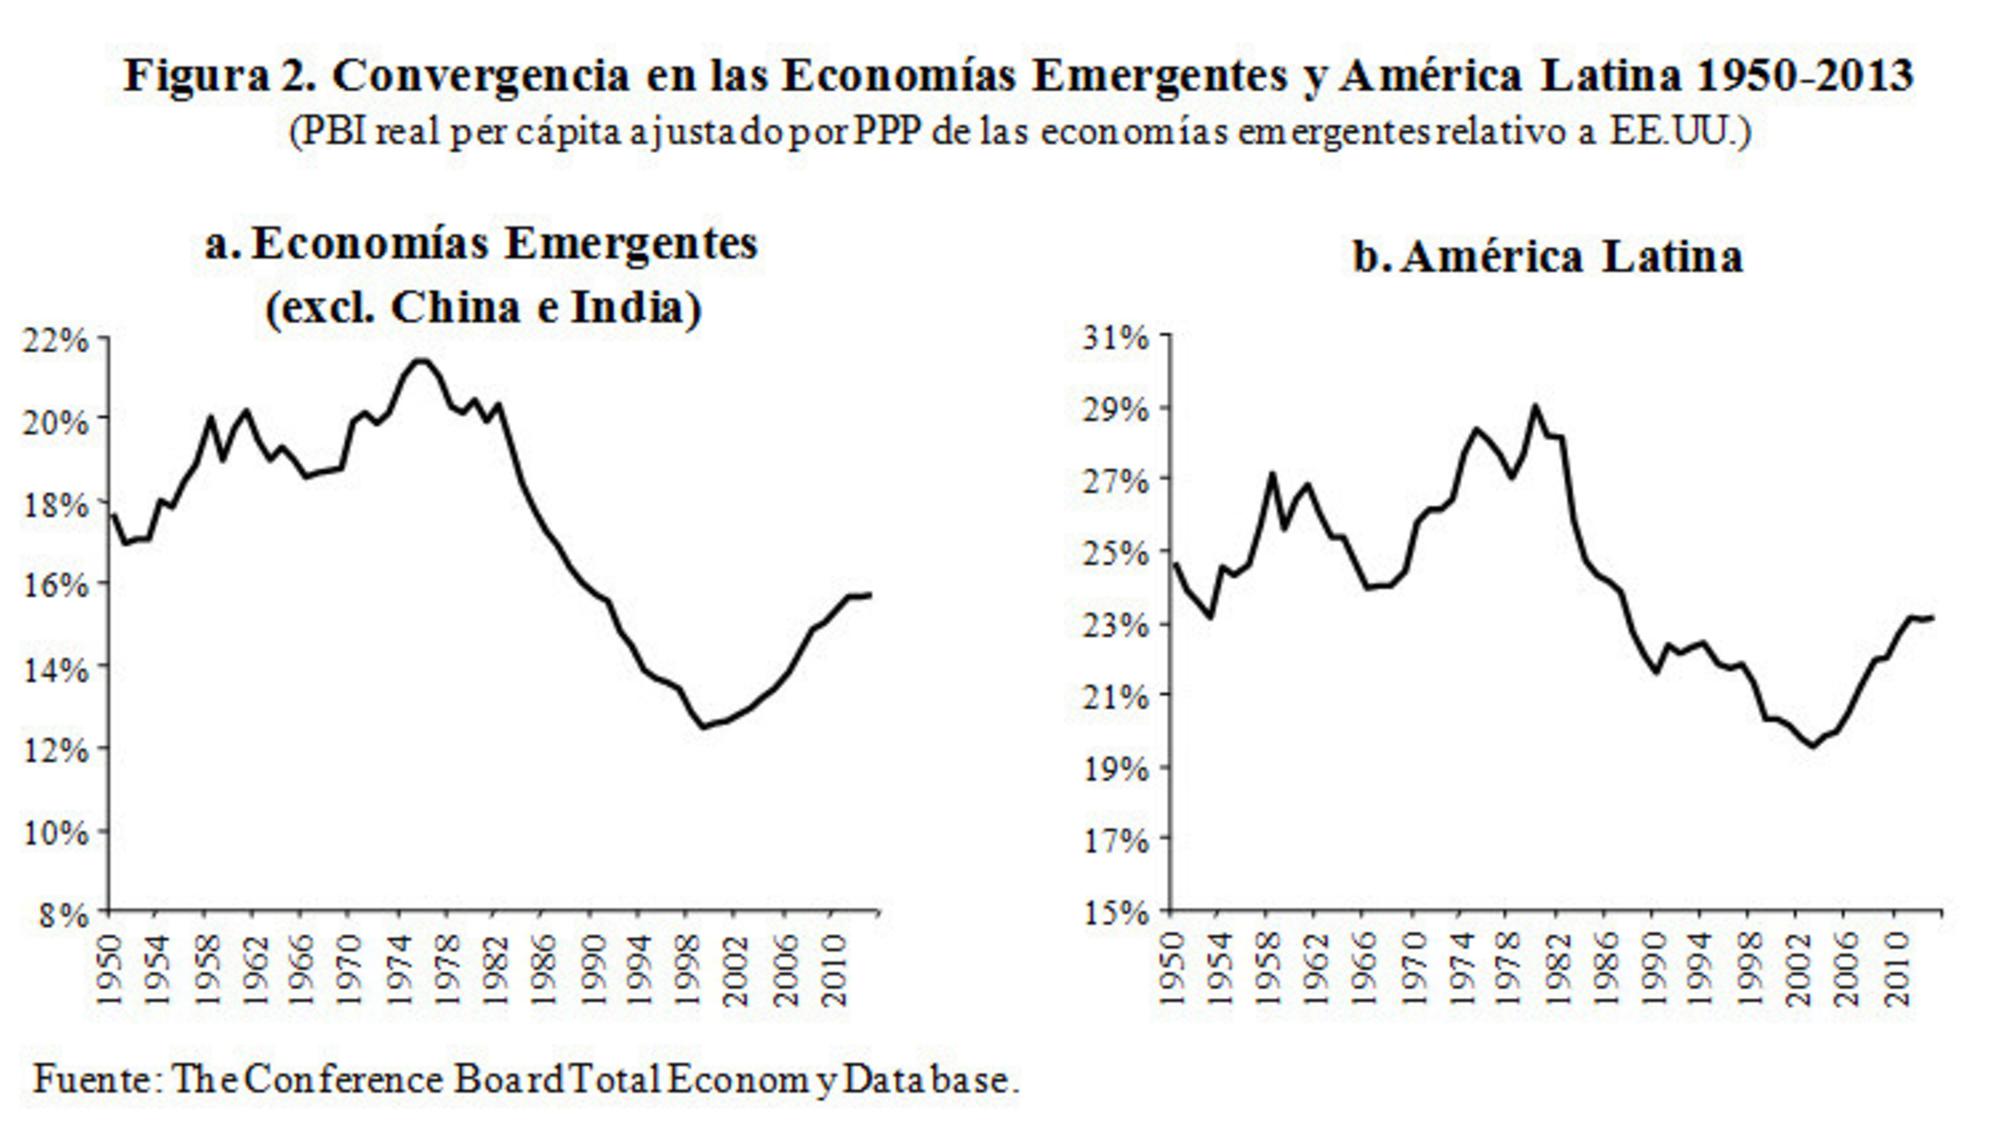 Convergencia economías emergentes y América Latina